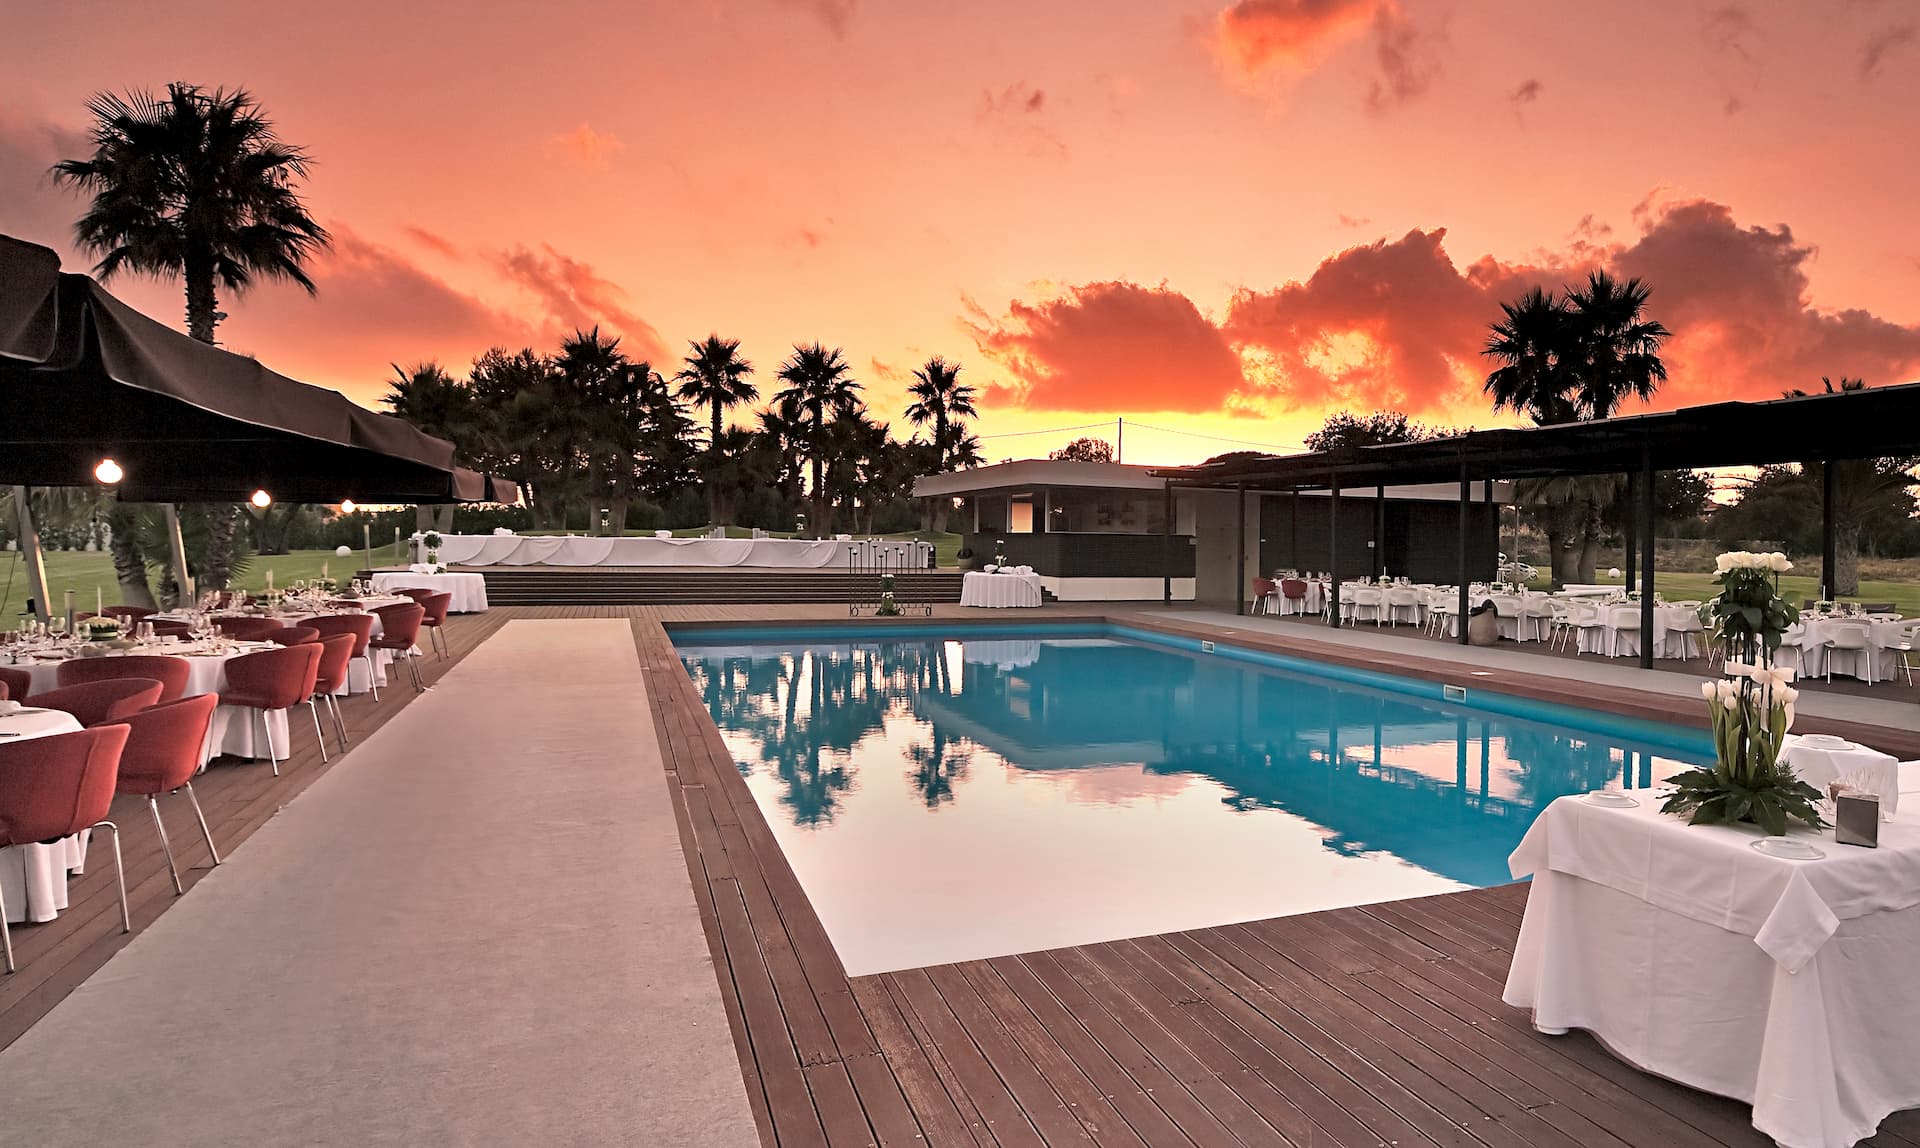 La piscina di Villa Carlotta, emozioni al tramonto